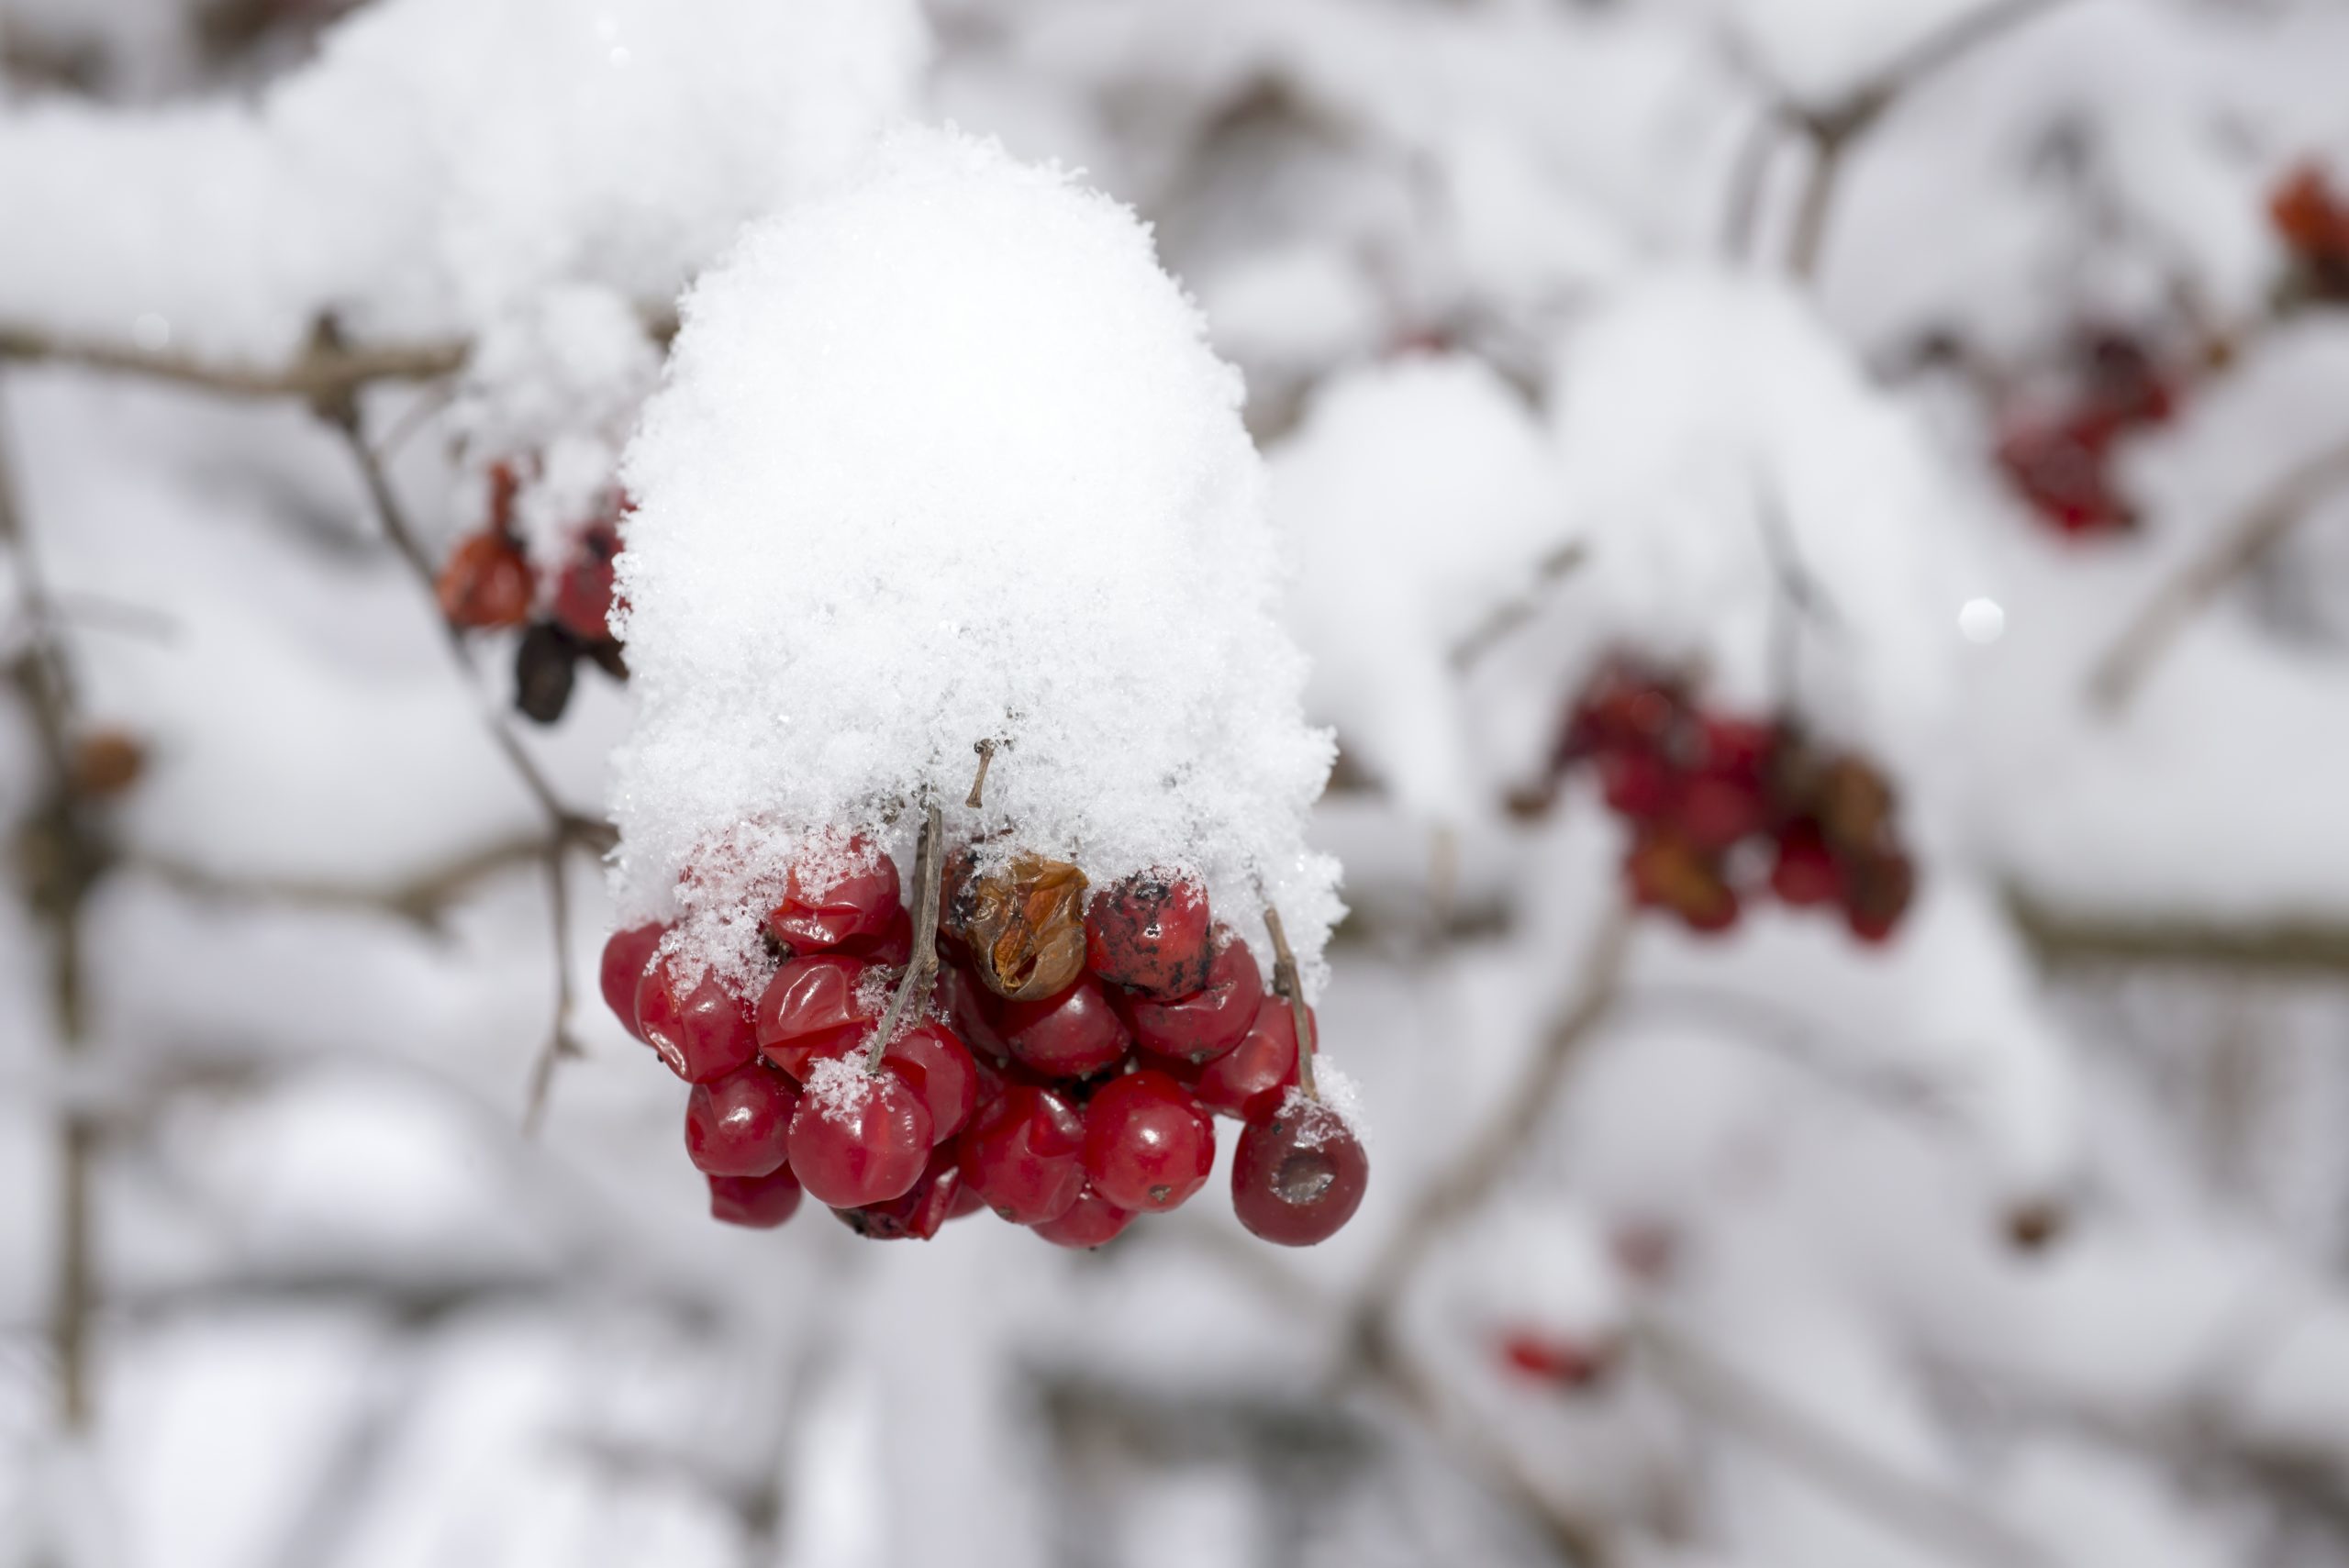 Fotografie Ploeg Benelux B.V. Fotograferen in de sneeuw rode bessen scaled